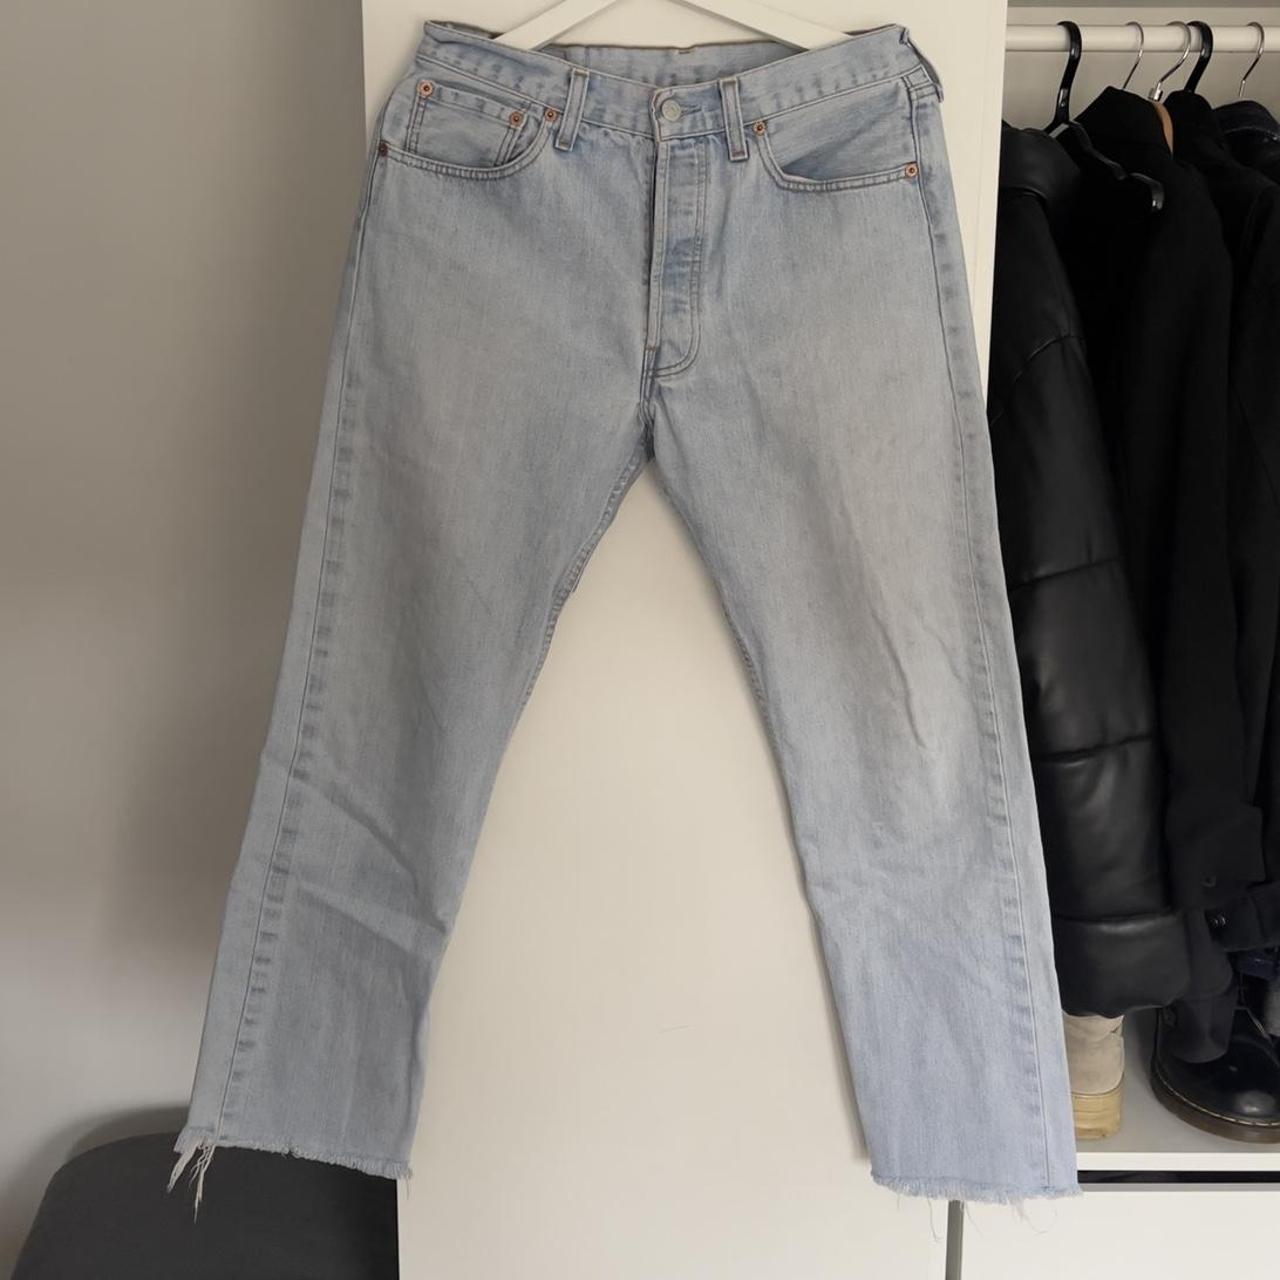 Vintage Levi’s 501 jeans in lightwash with frayed... - Depop